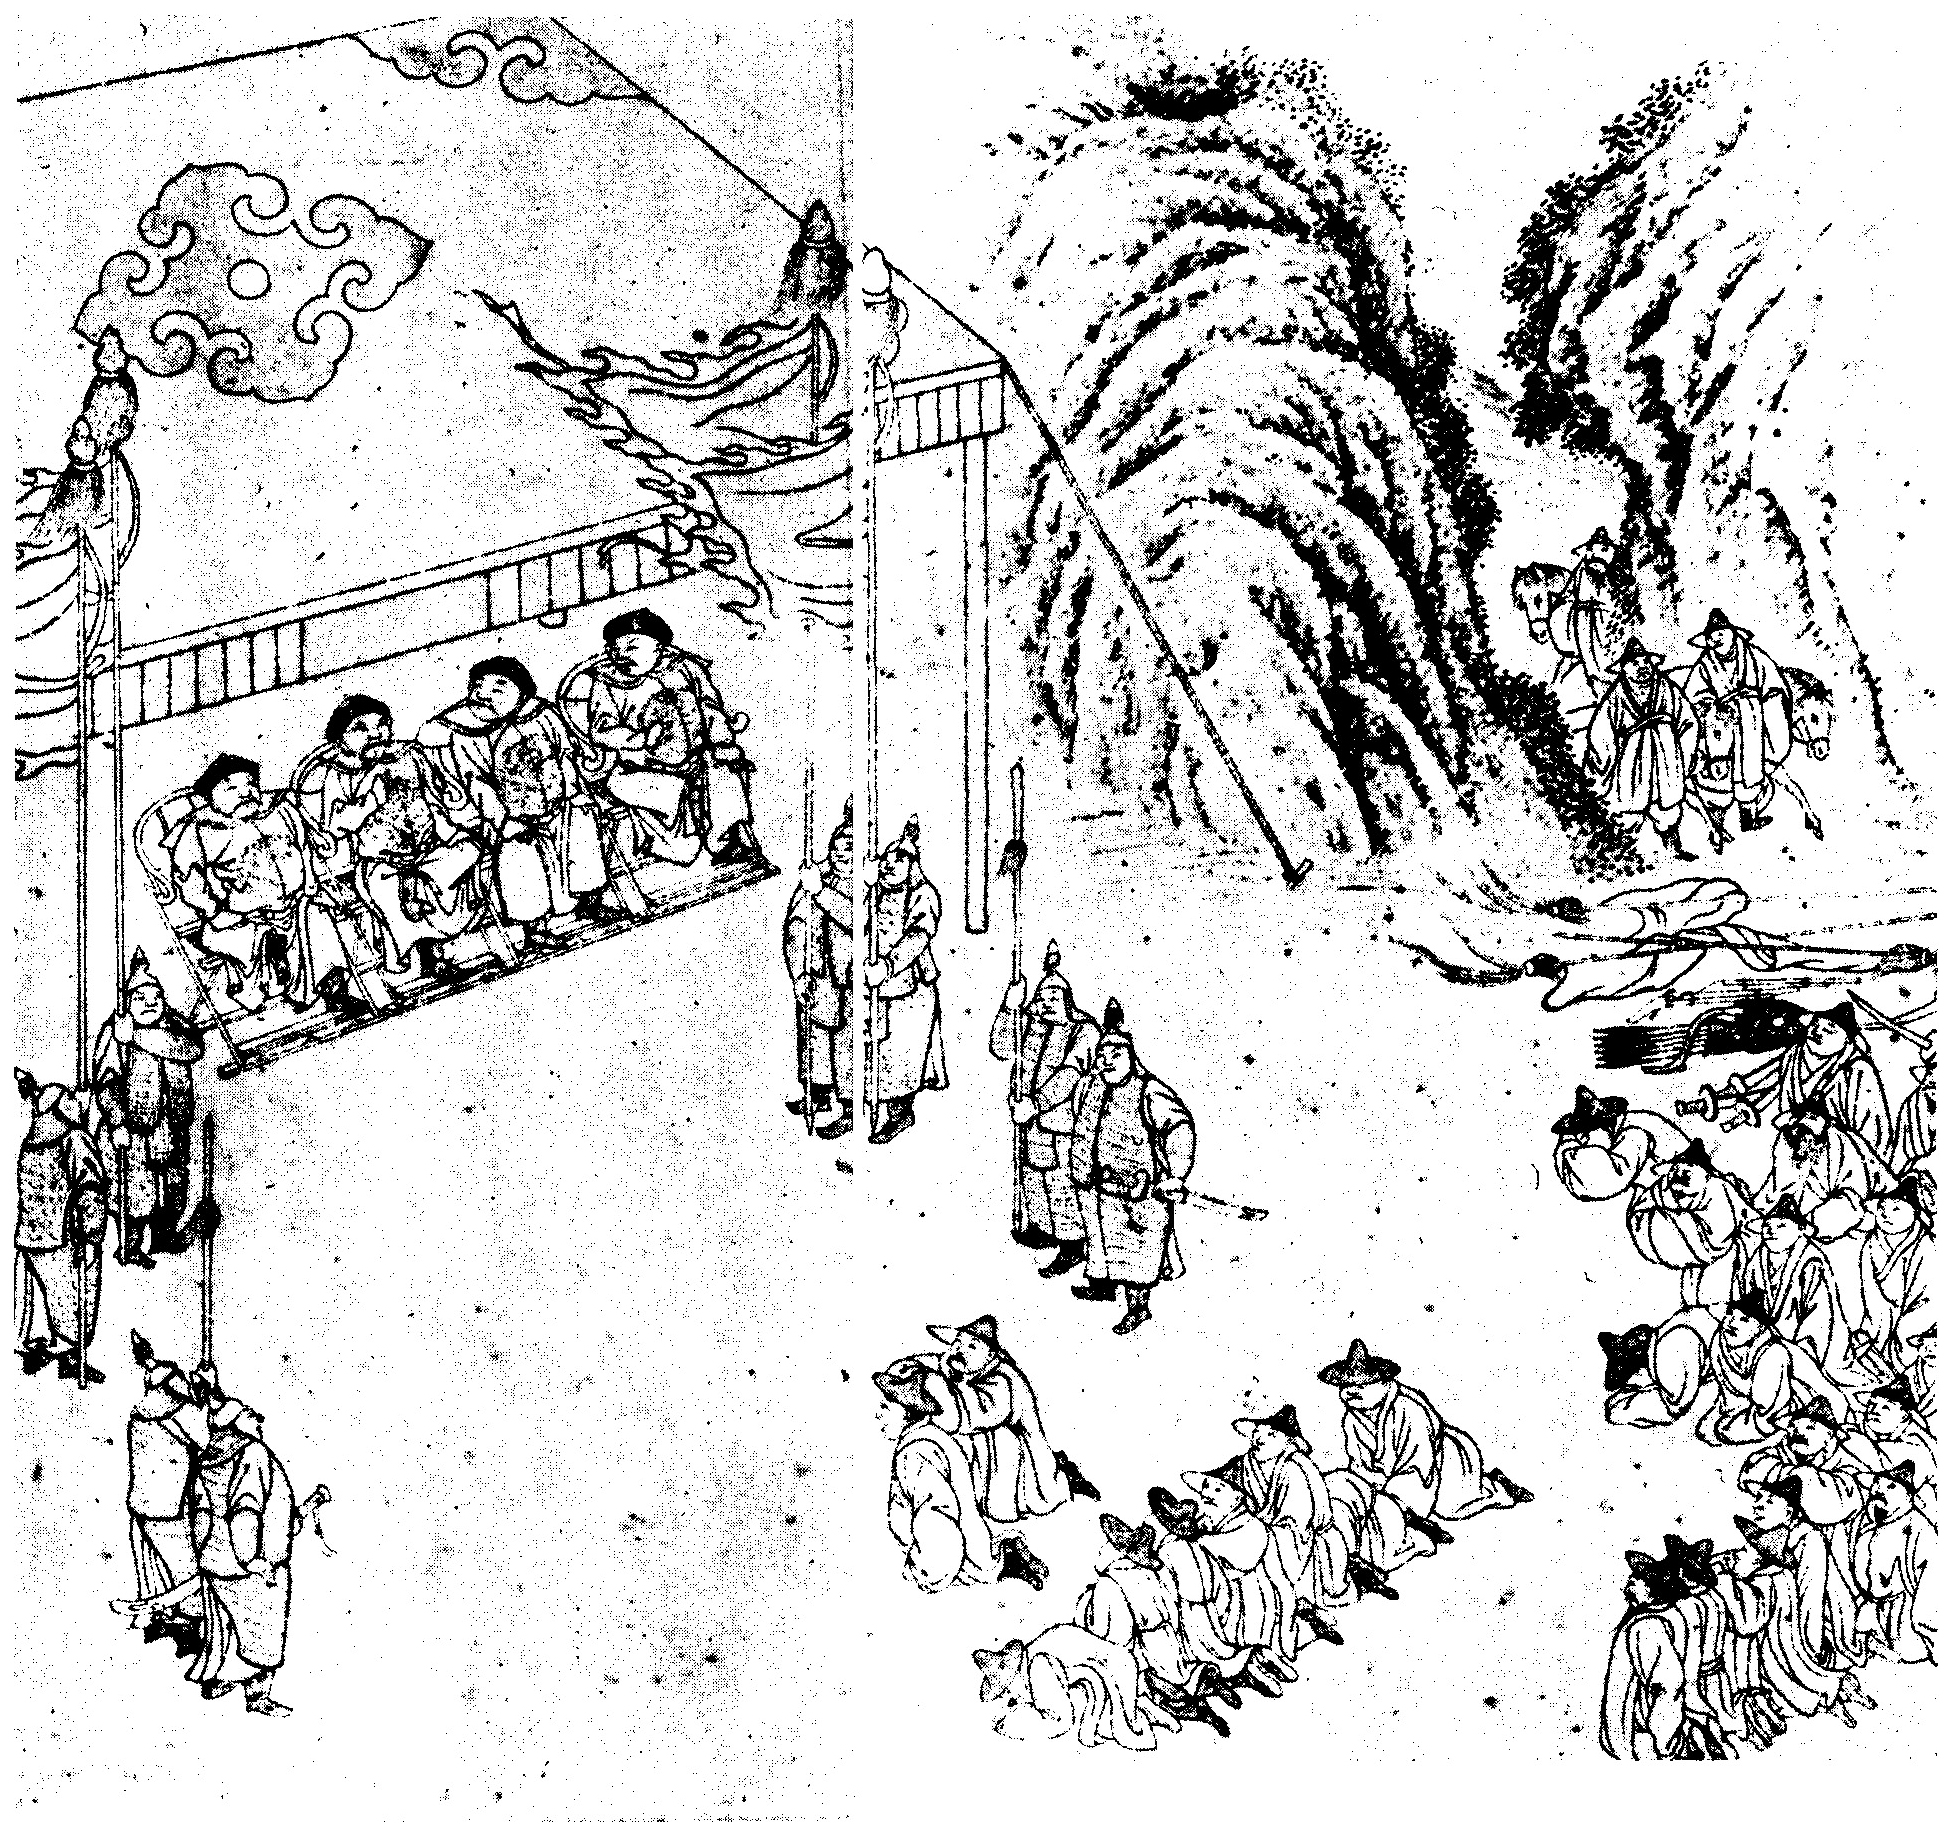 《滿洲實錄》中的姜弘立歸降圖